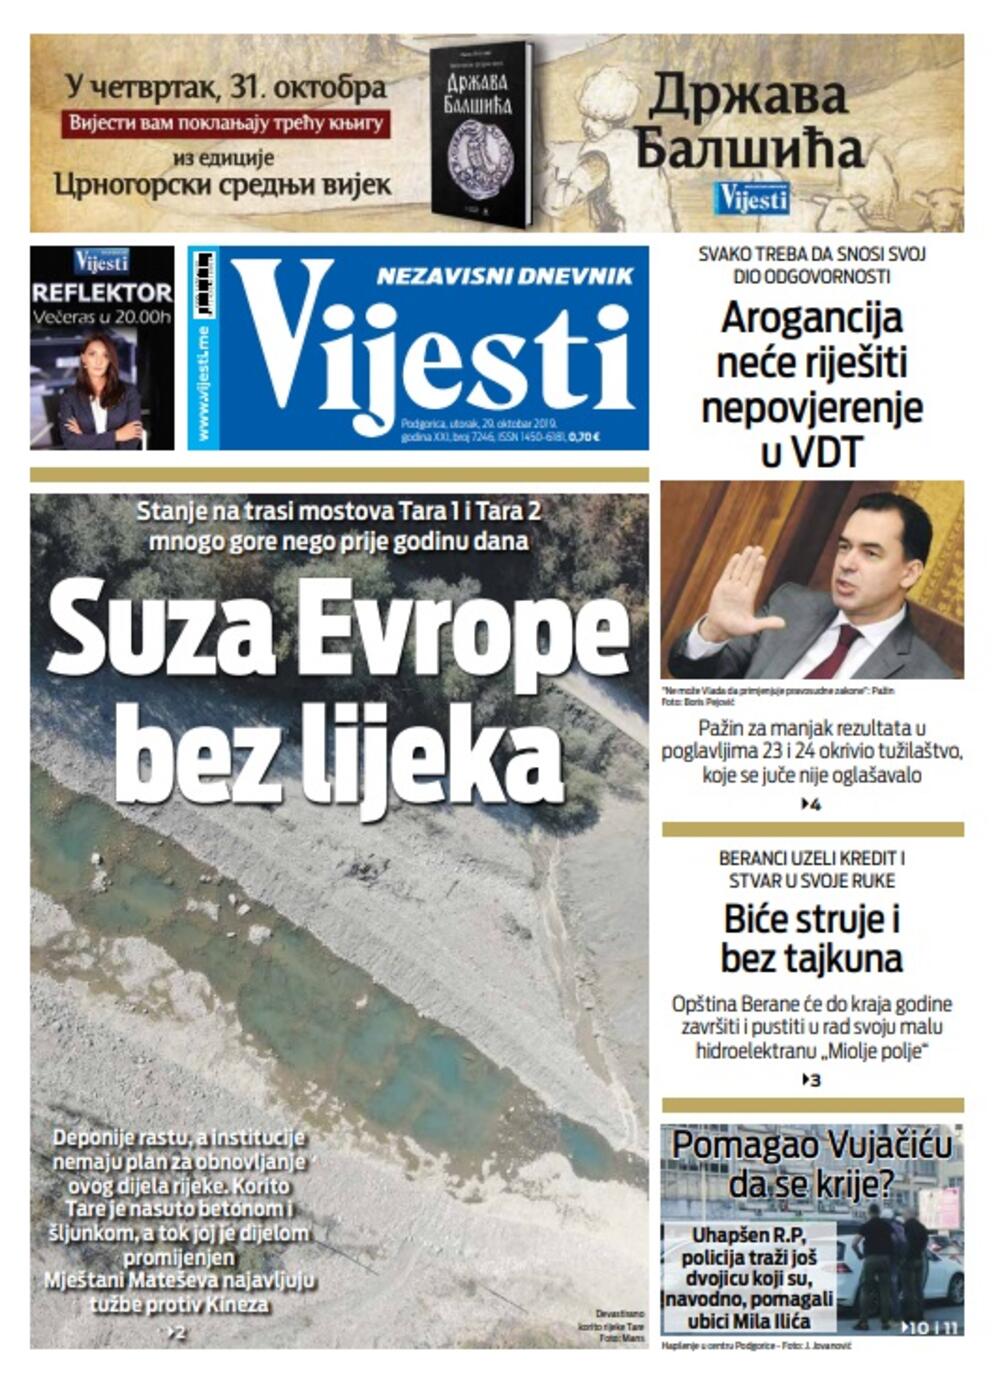 Naslovna strana "Vijesti" za 29. oktobar 2019., Foto: Vijesti